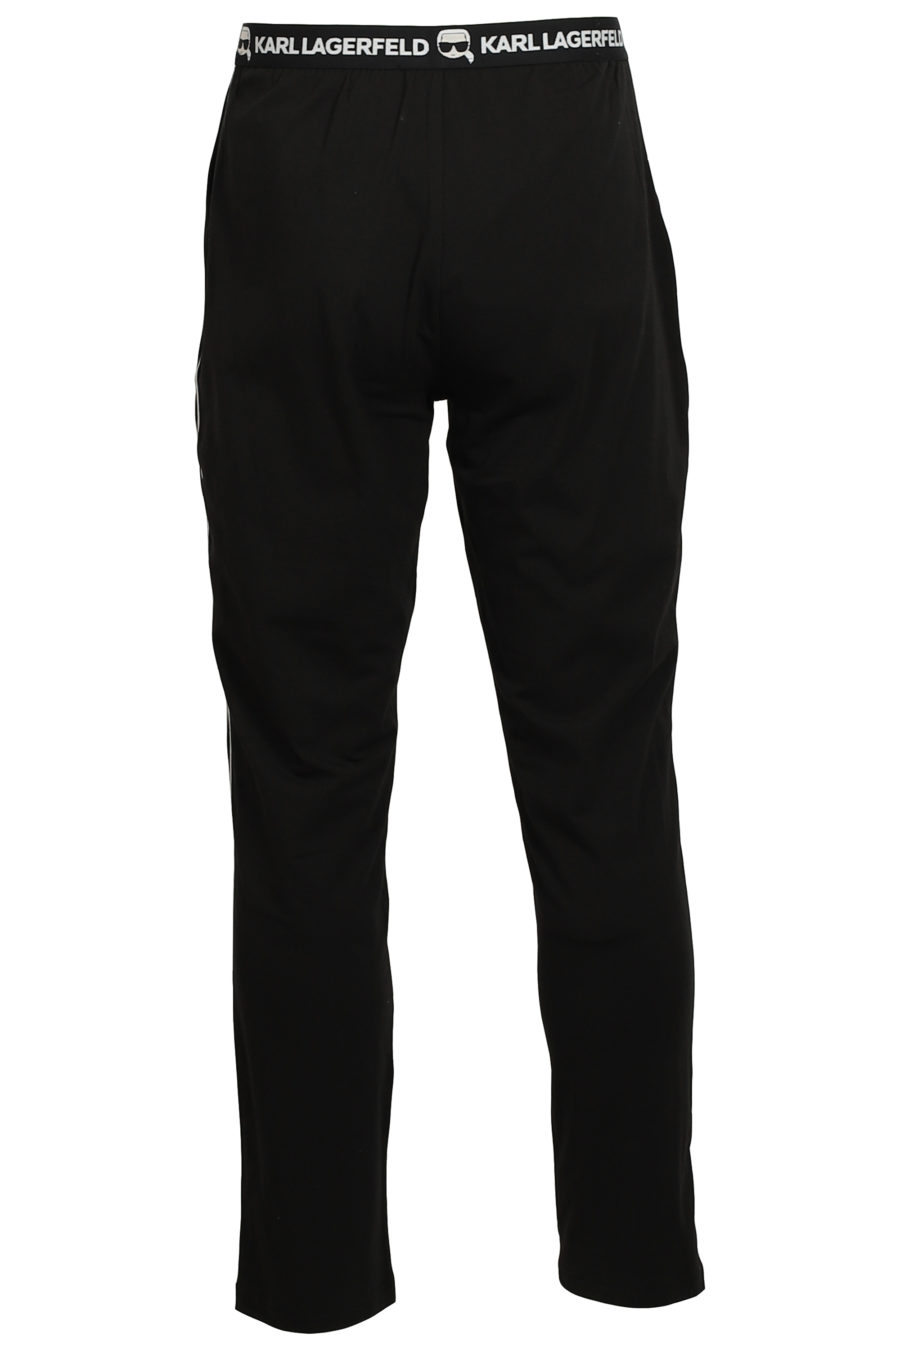 Set de pijama negro y blanco con logo en goma - IMG 3741